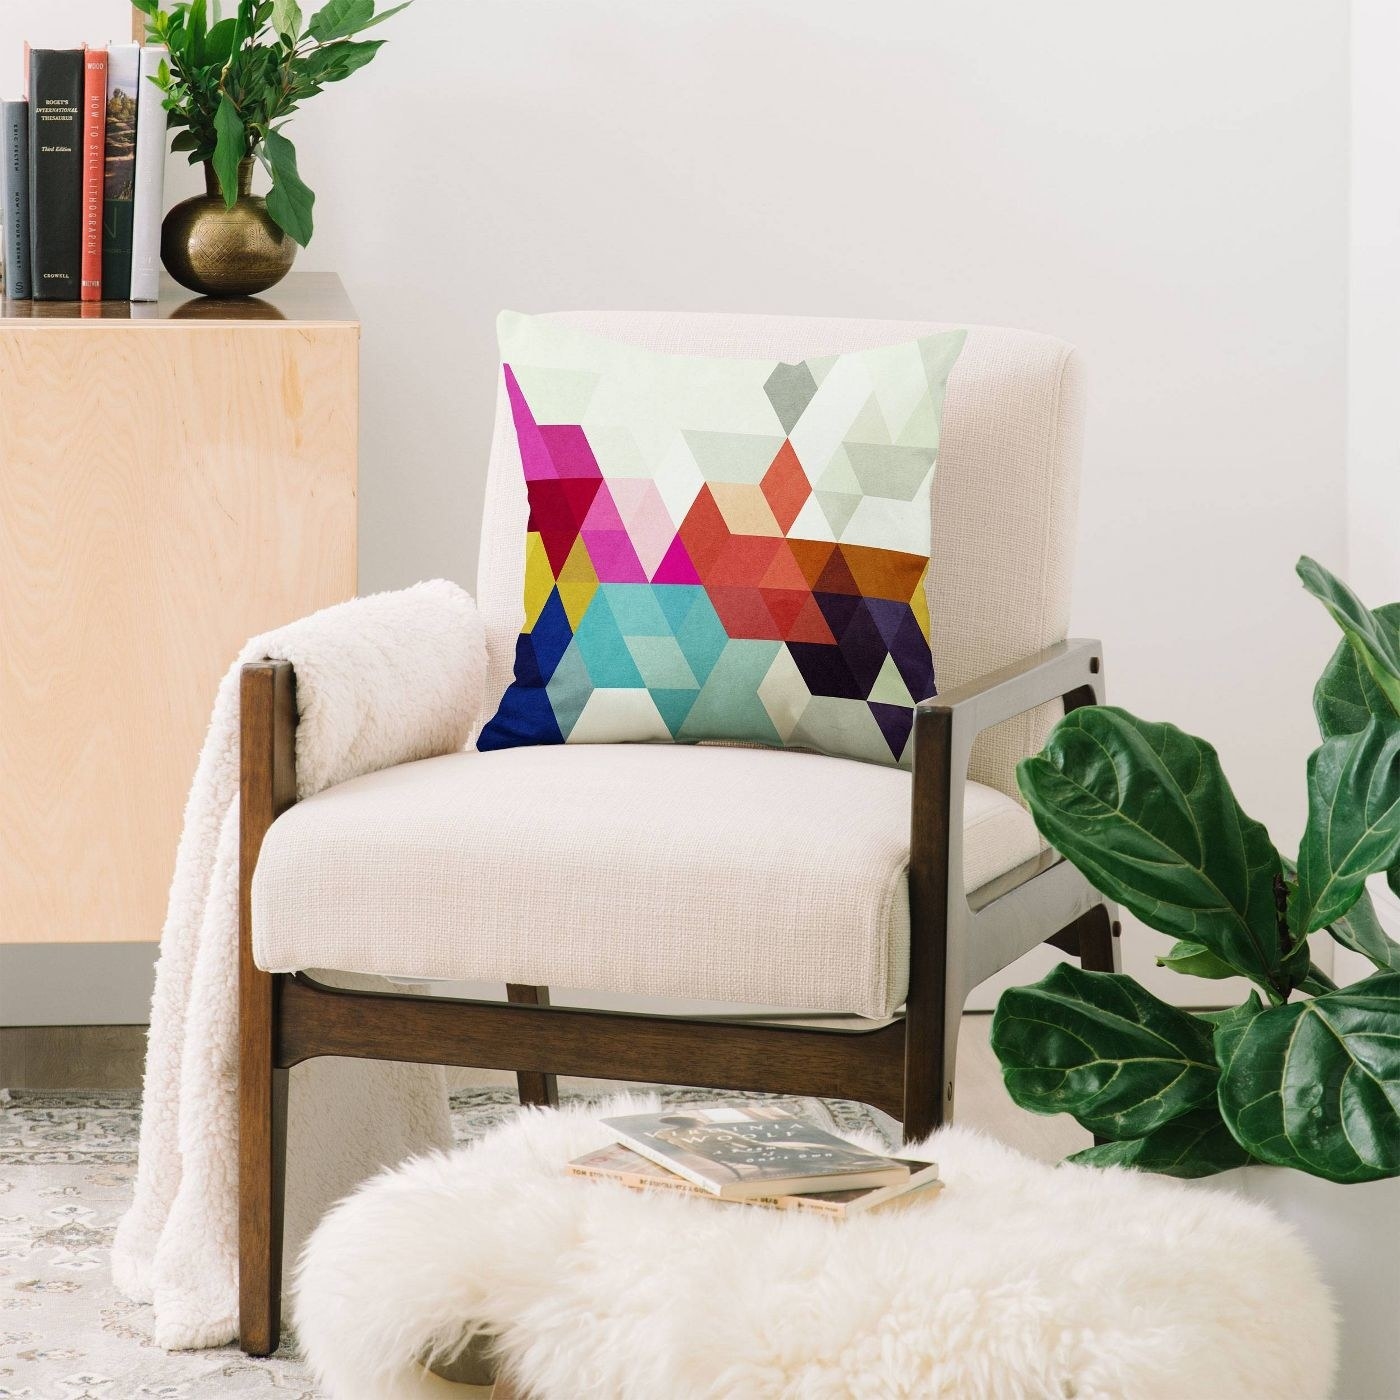 A rainbow pillow in a cream chair